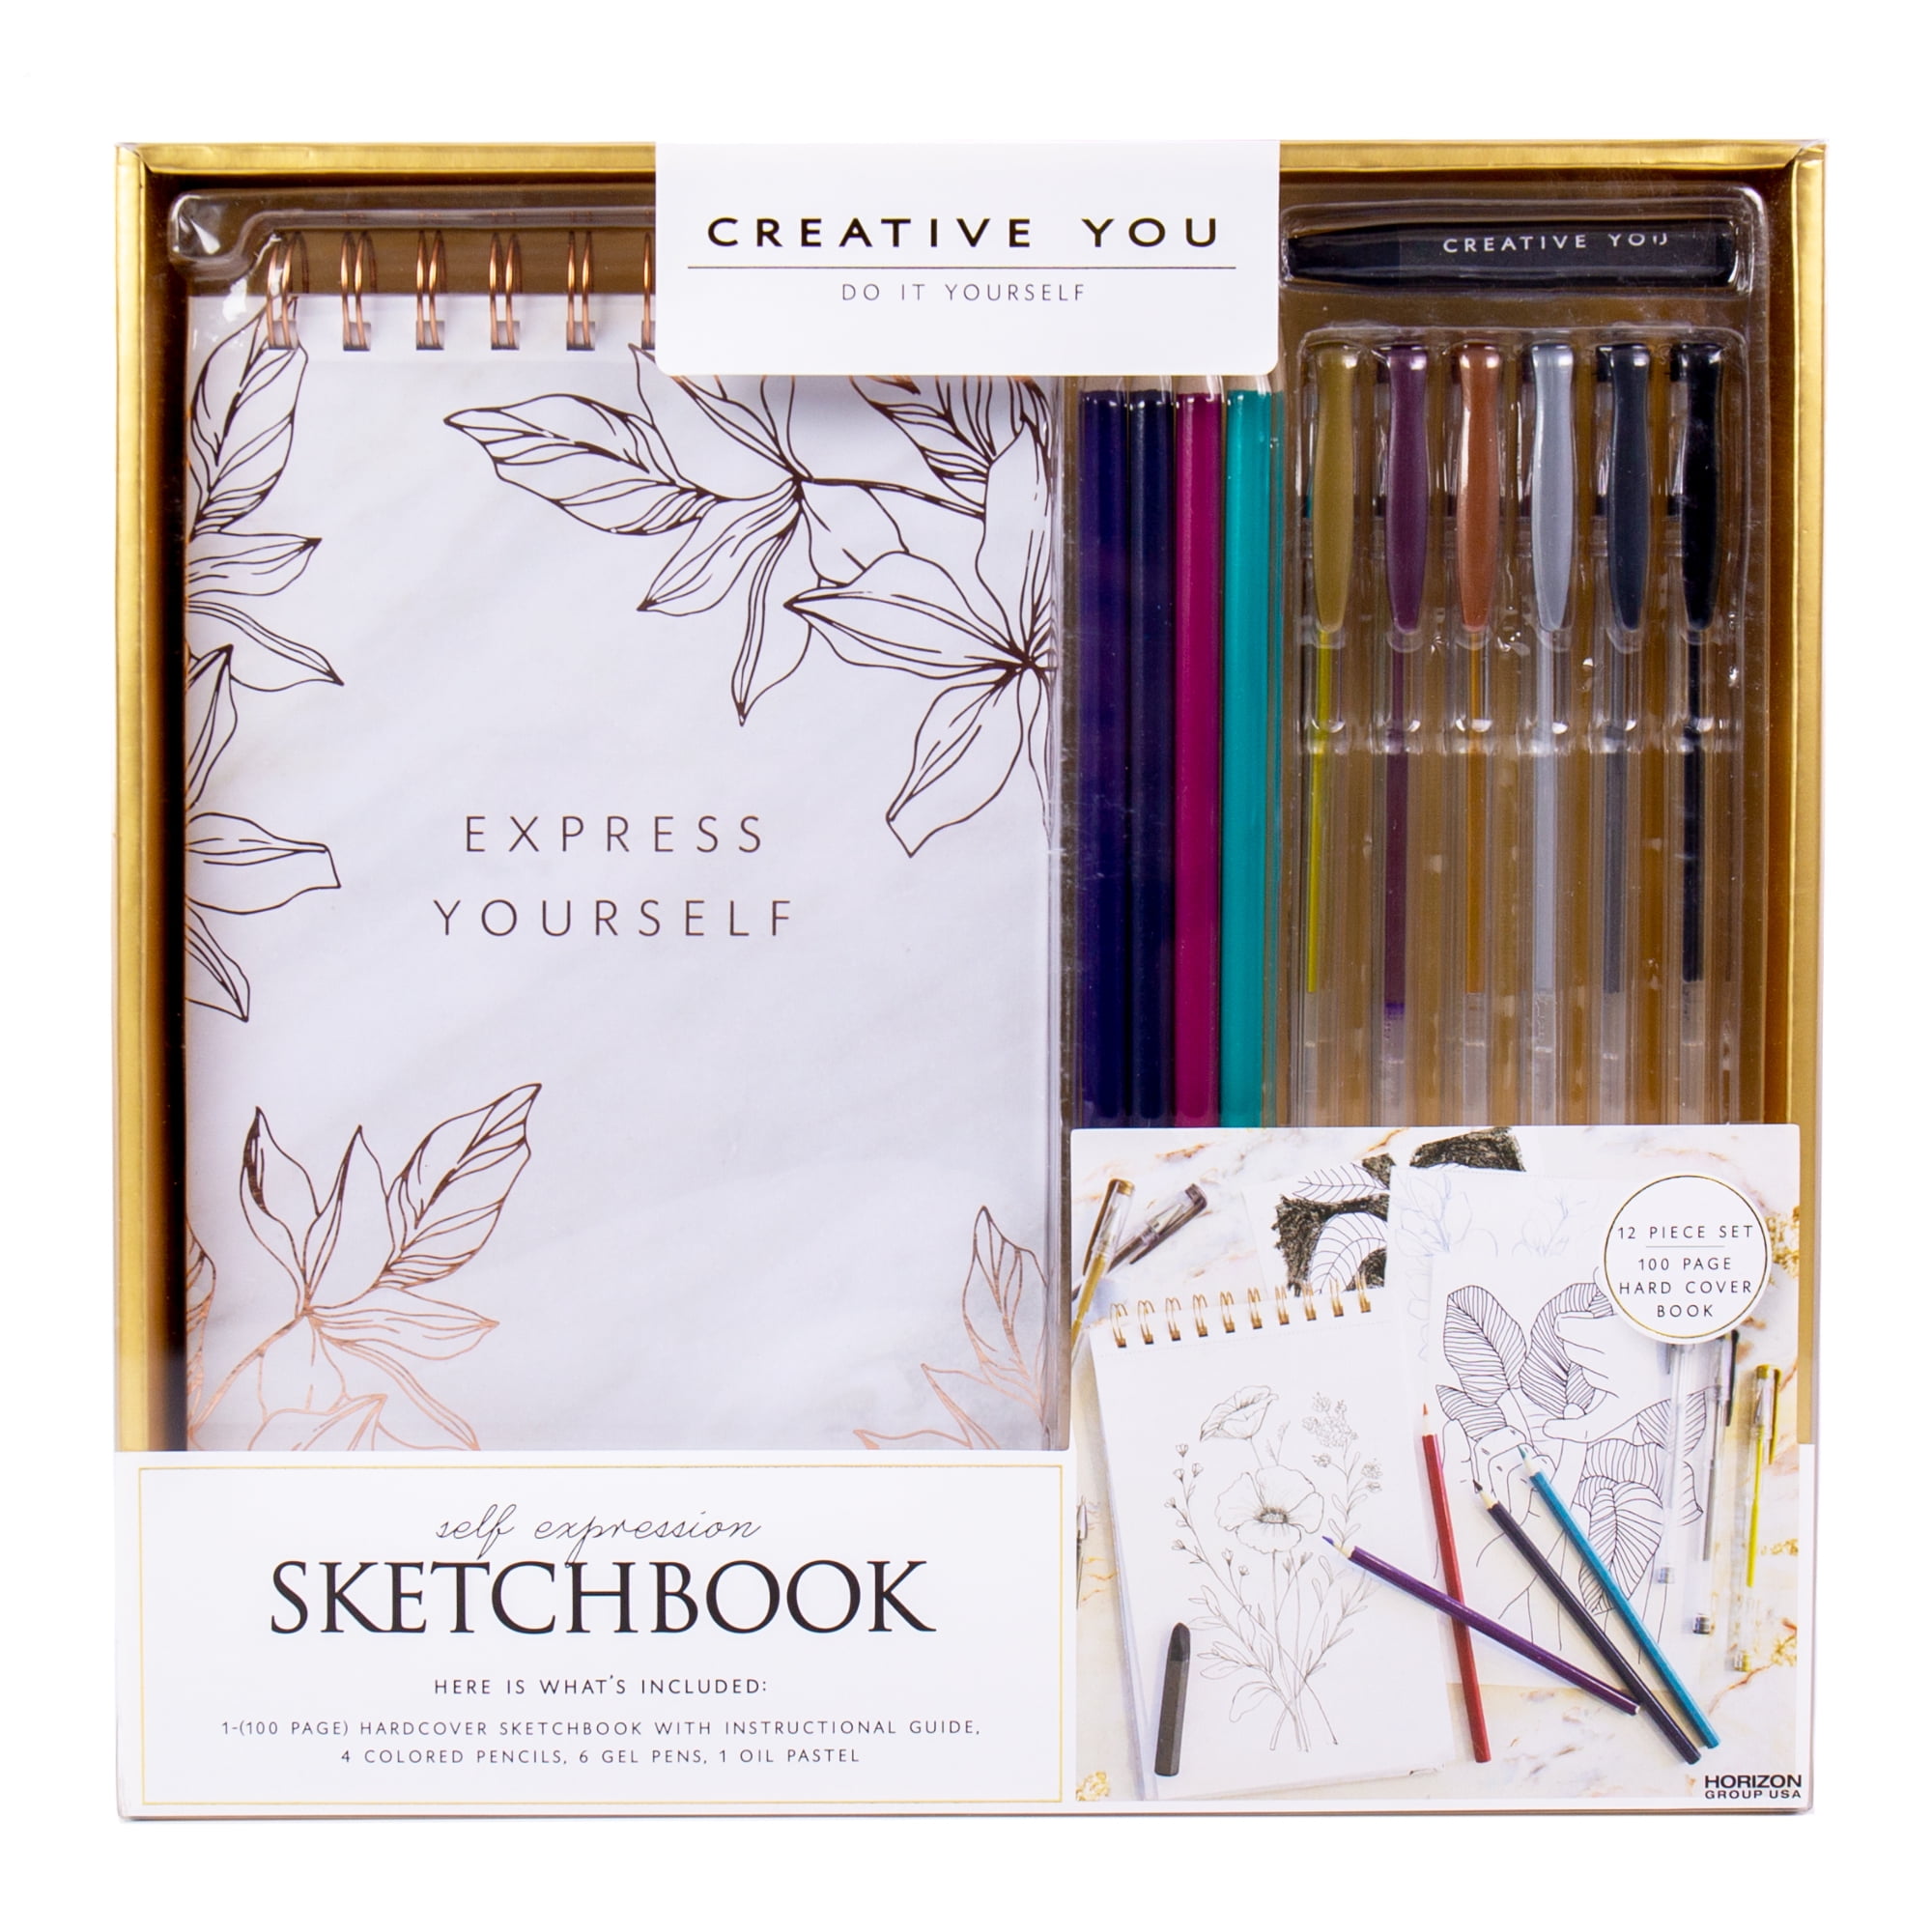 Just for Kids Art Journaling & Autograph Books] Sketchbook Class {Sel – Art  Journaling the Magic